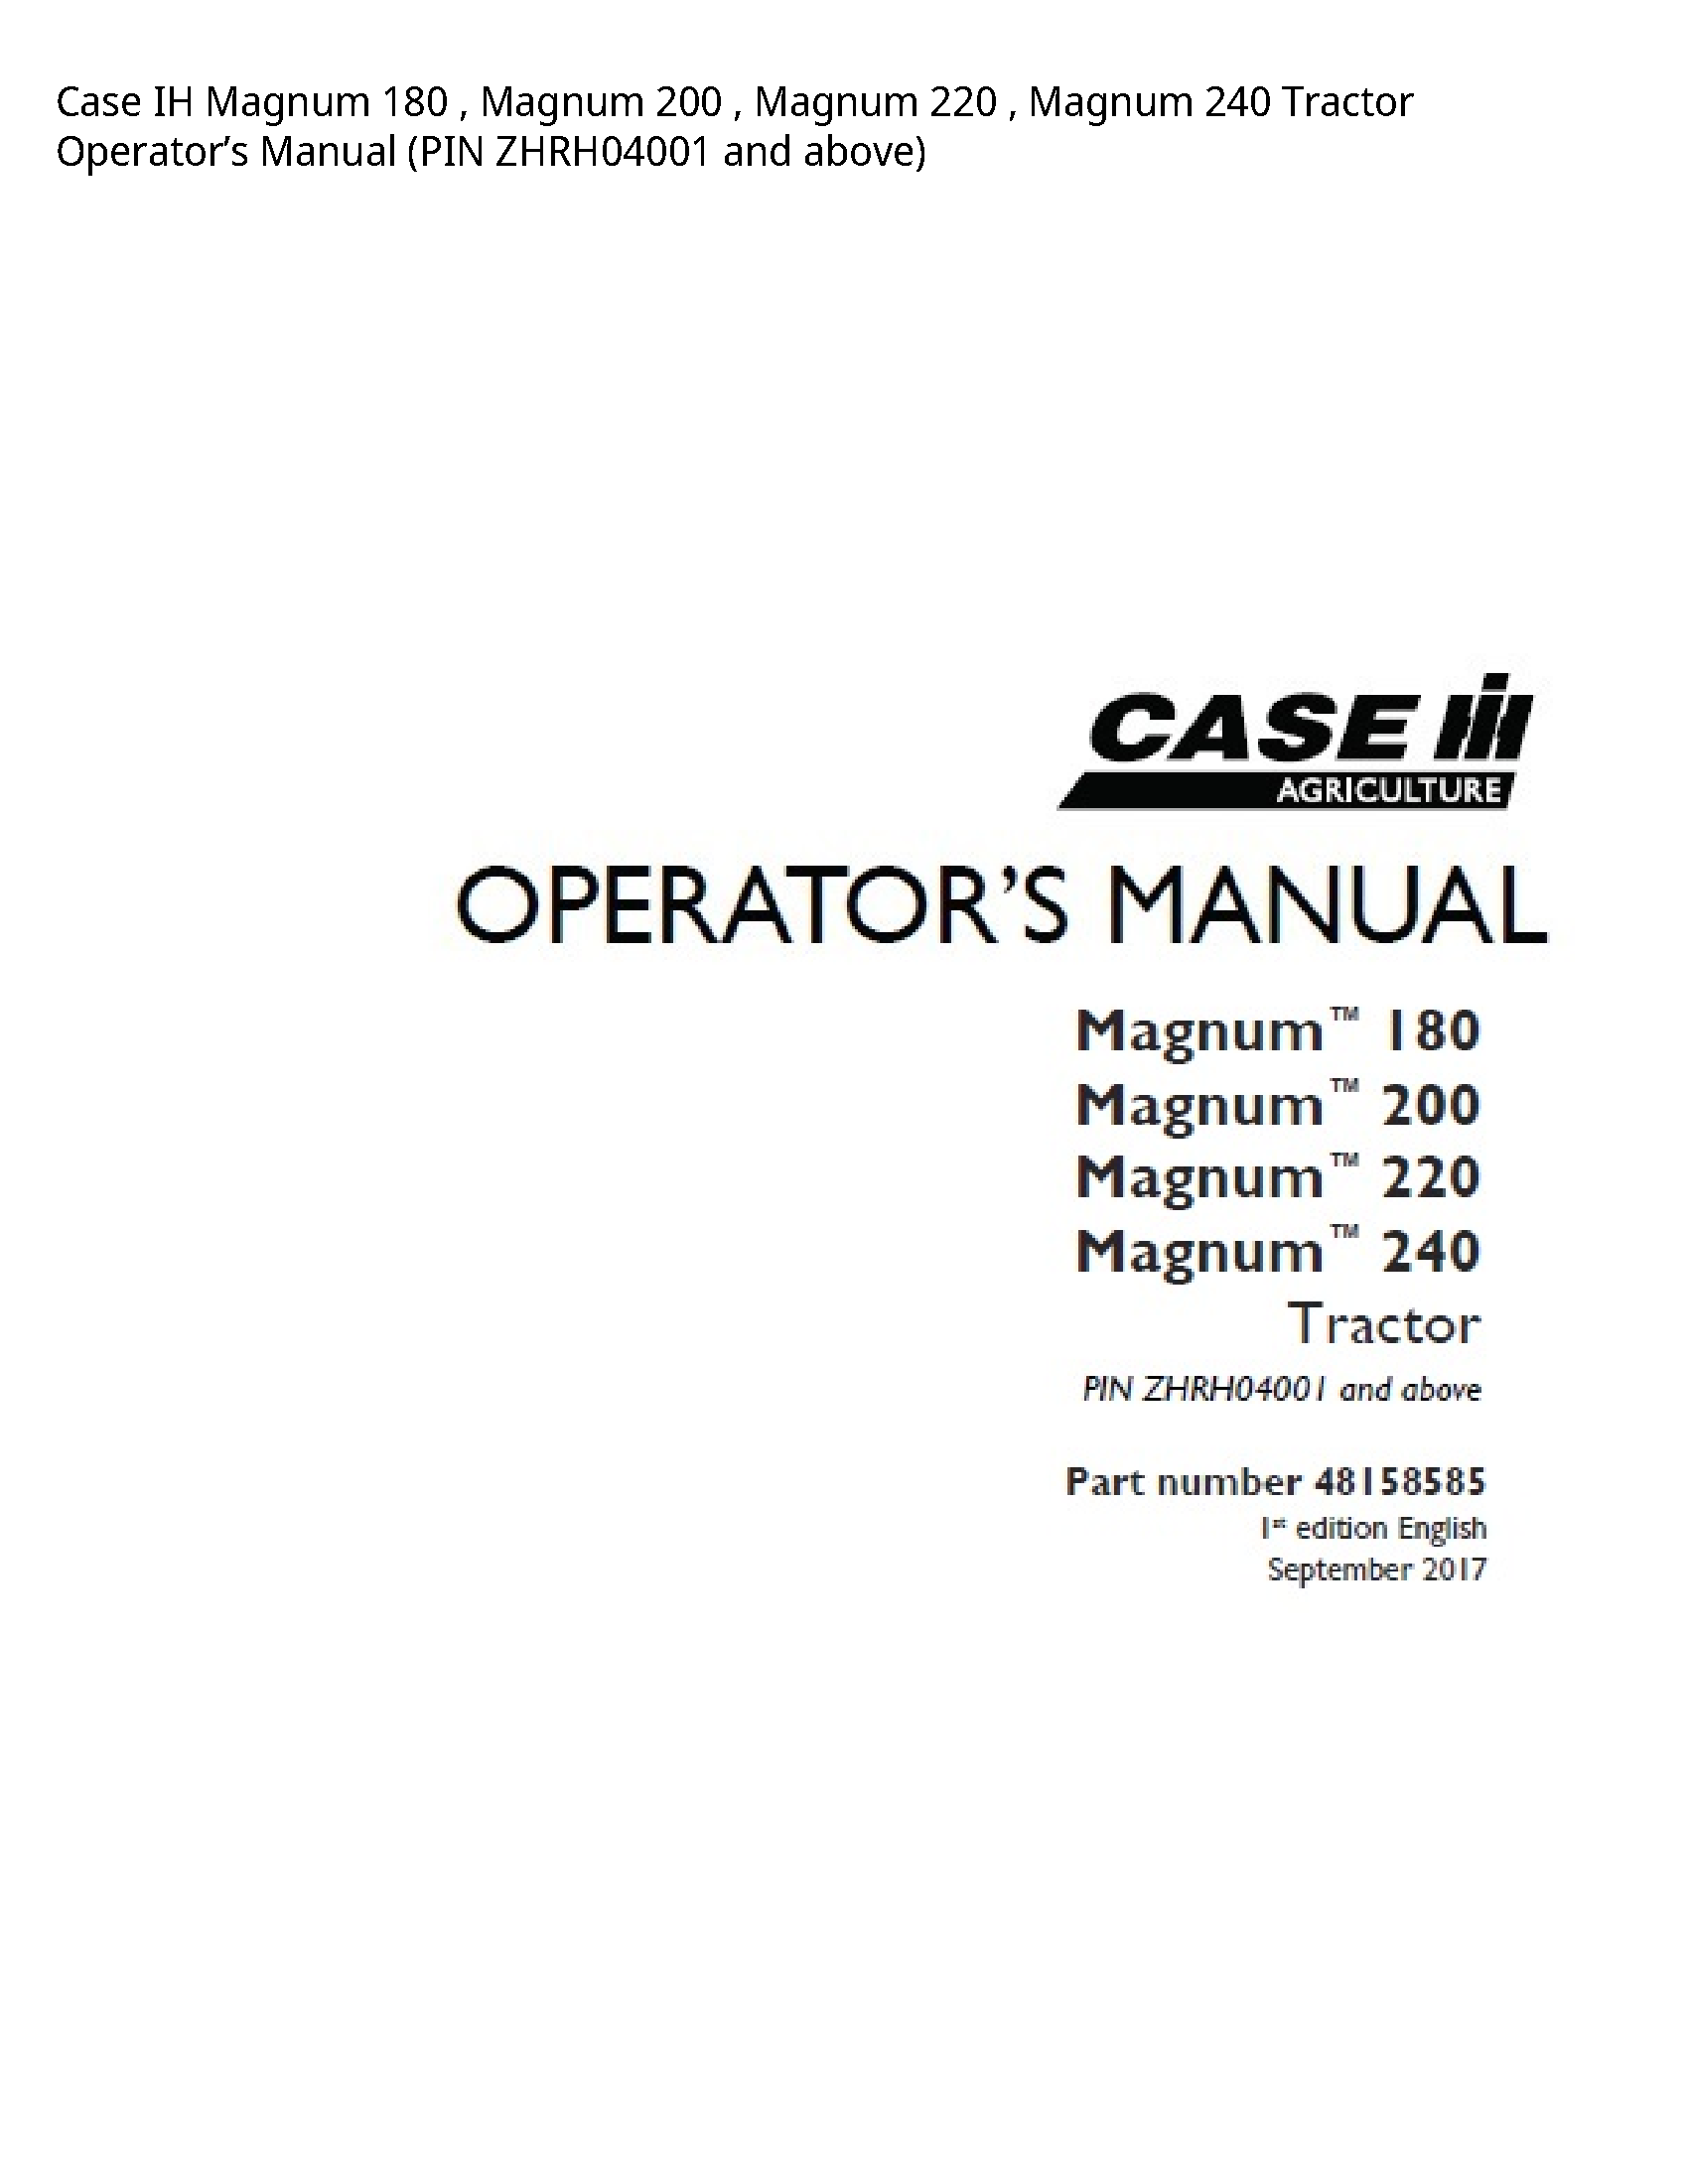 Case/Case IH 180 IH Magnum Magnum Magnum Magnum Tractor Operator’s manual